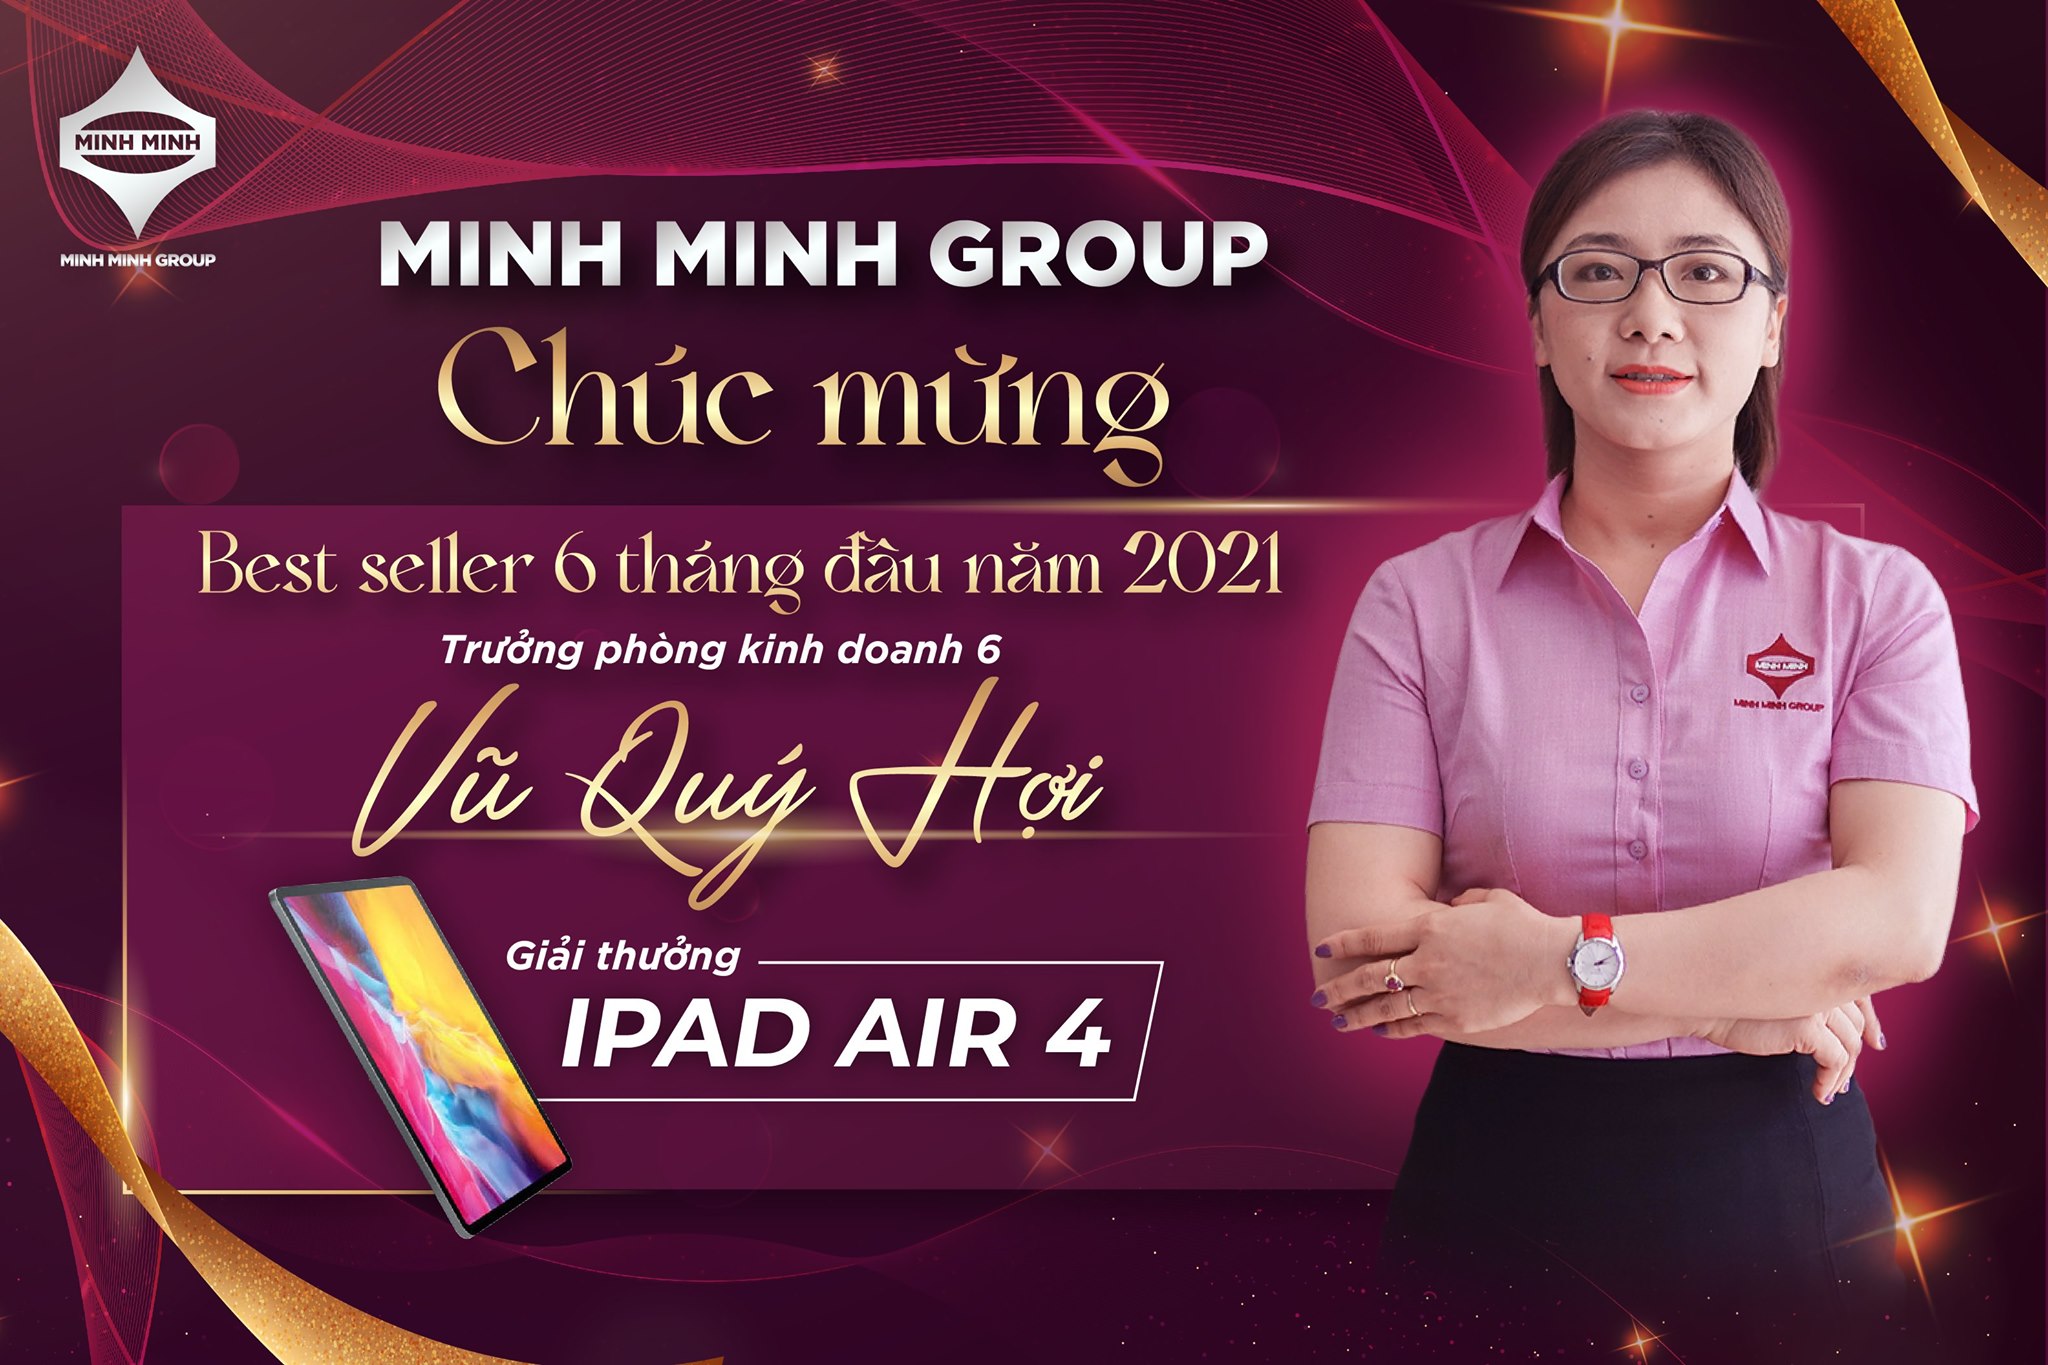 Ms Vũ Quý Hợi, trưởng phòng kinh doanh 6 - Chi nhánh Đà Nẵng cũng đã giành được giải thưởng Chuyên viên xuất sắc nhất 6 tháng đầu năm